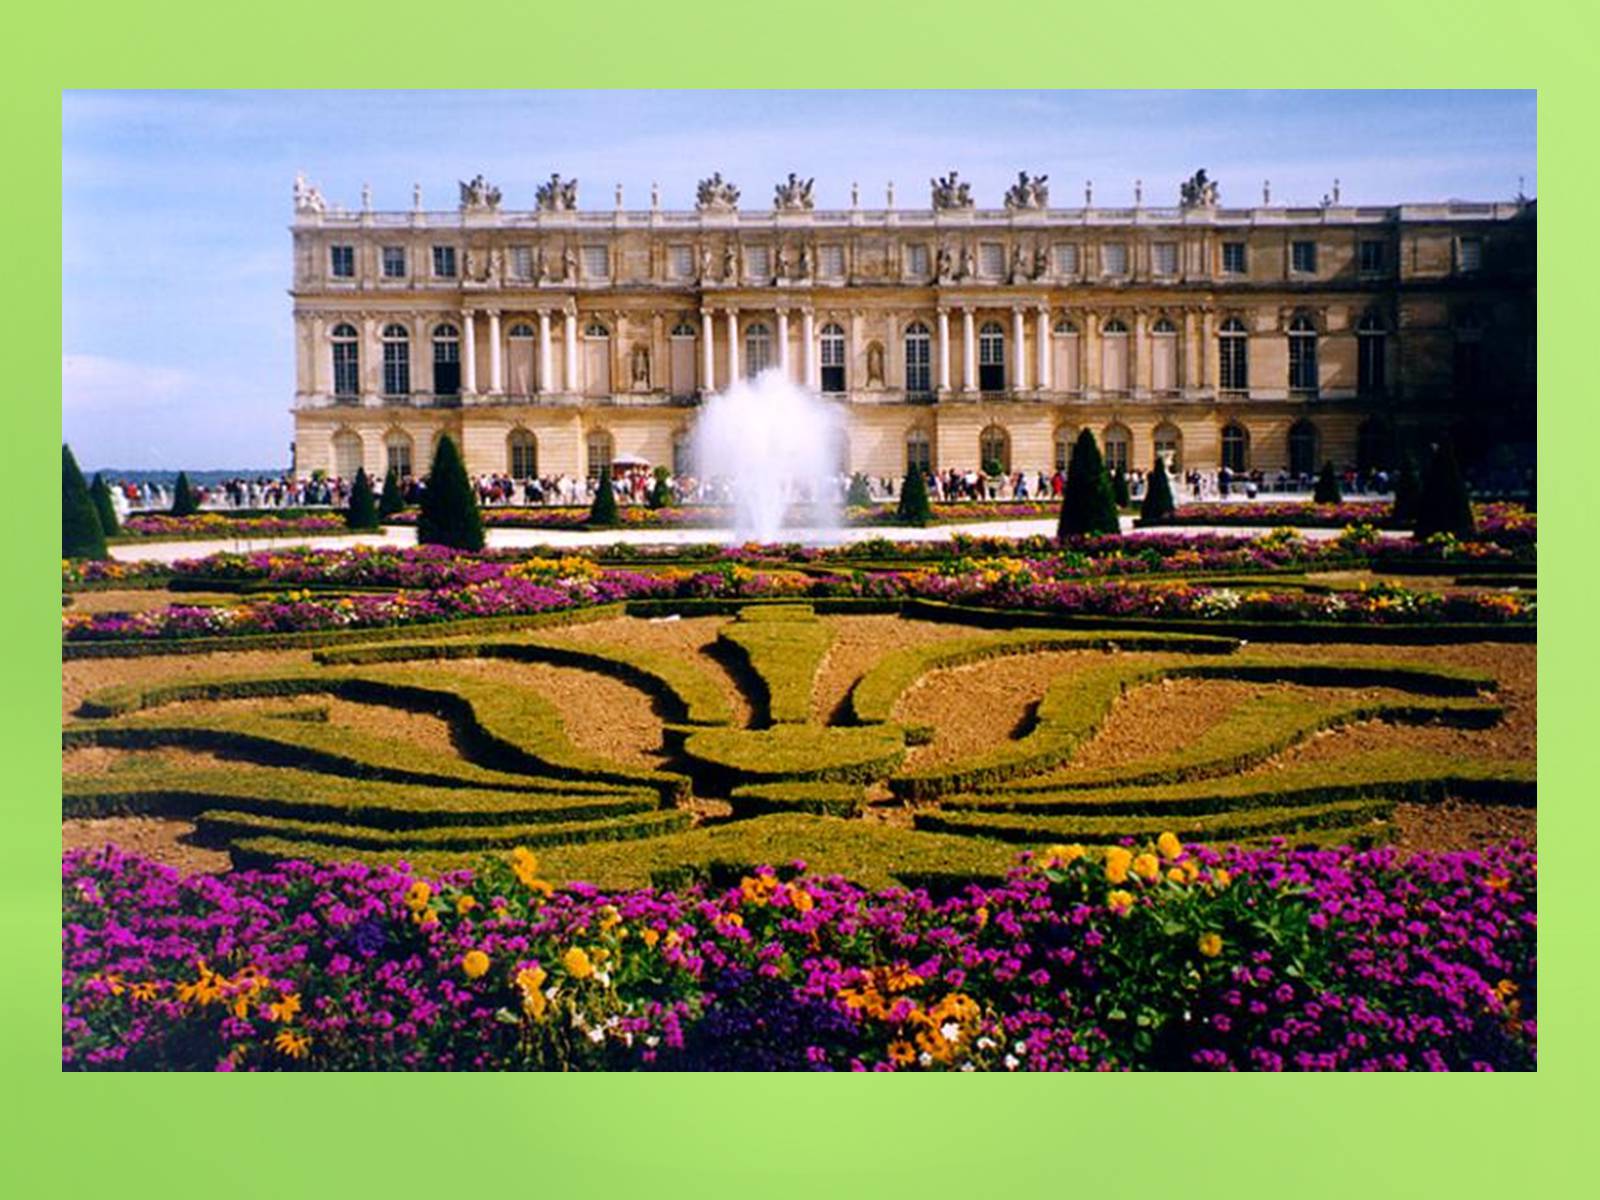 Chateau de versailles. Версальский дворец Версаль Франция. Версаль дворцово-парковый ансамбль во Франции. Парковый ансамбль Версаля во Франции. Франция Версаль (в 17 км от Парижа).